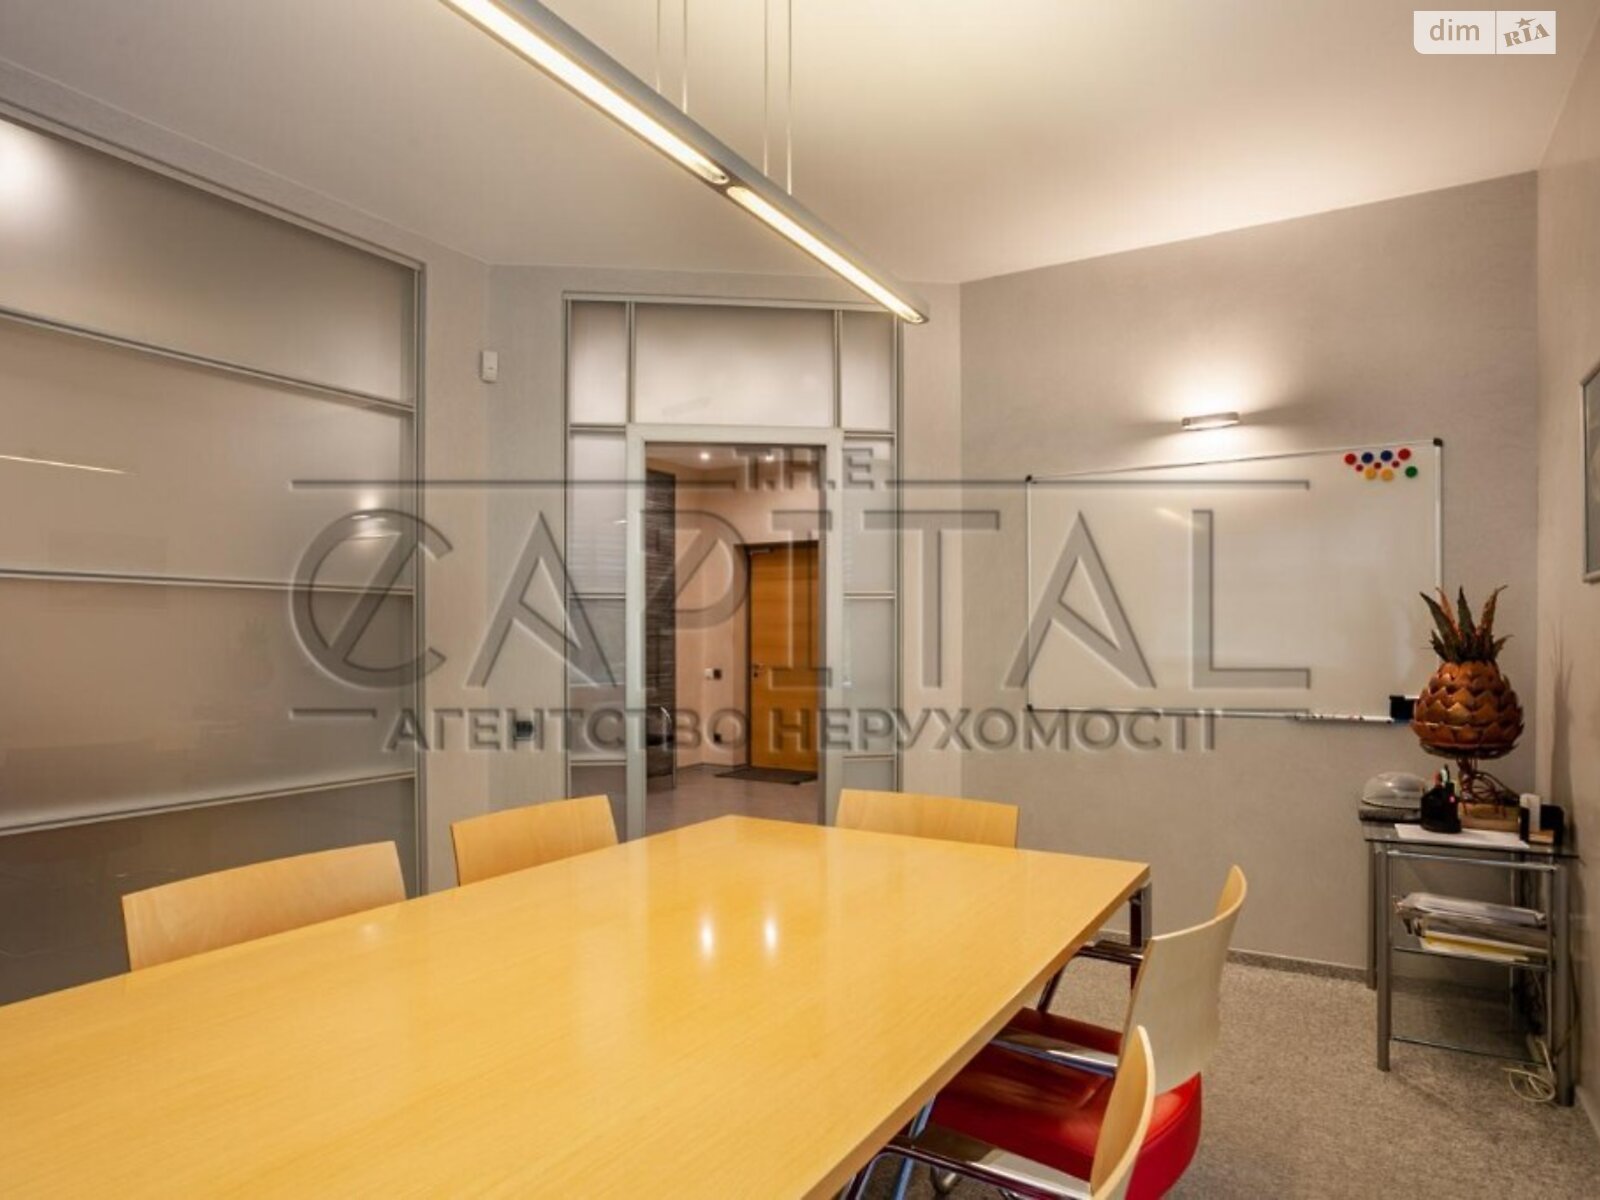 Аренда офисного помещения в Киеве, Деловая улица 2А, помещений - 5, этаж - 2 фото 1